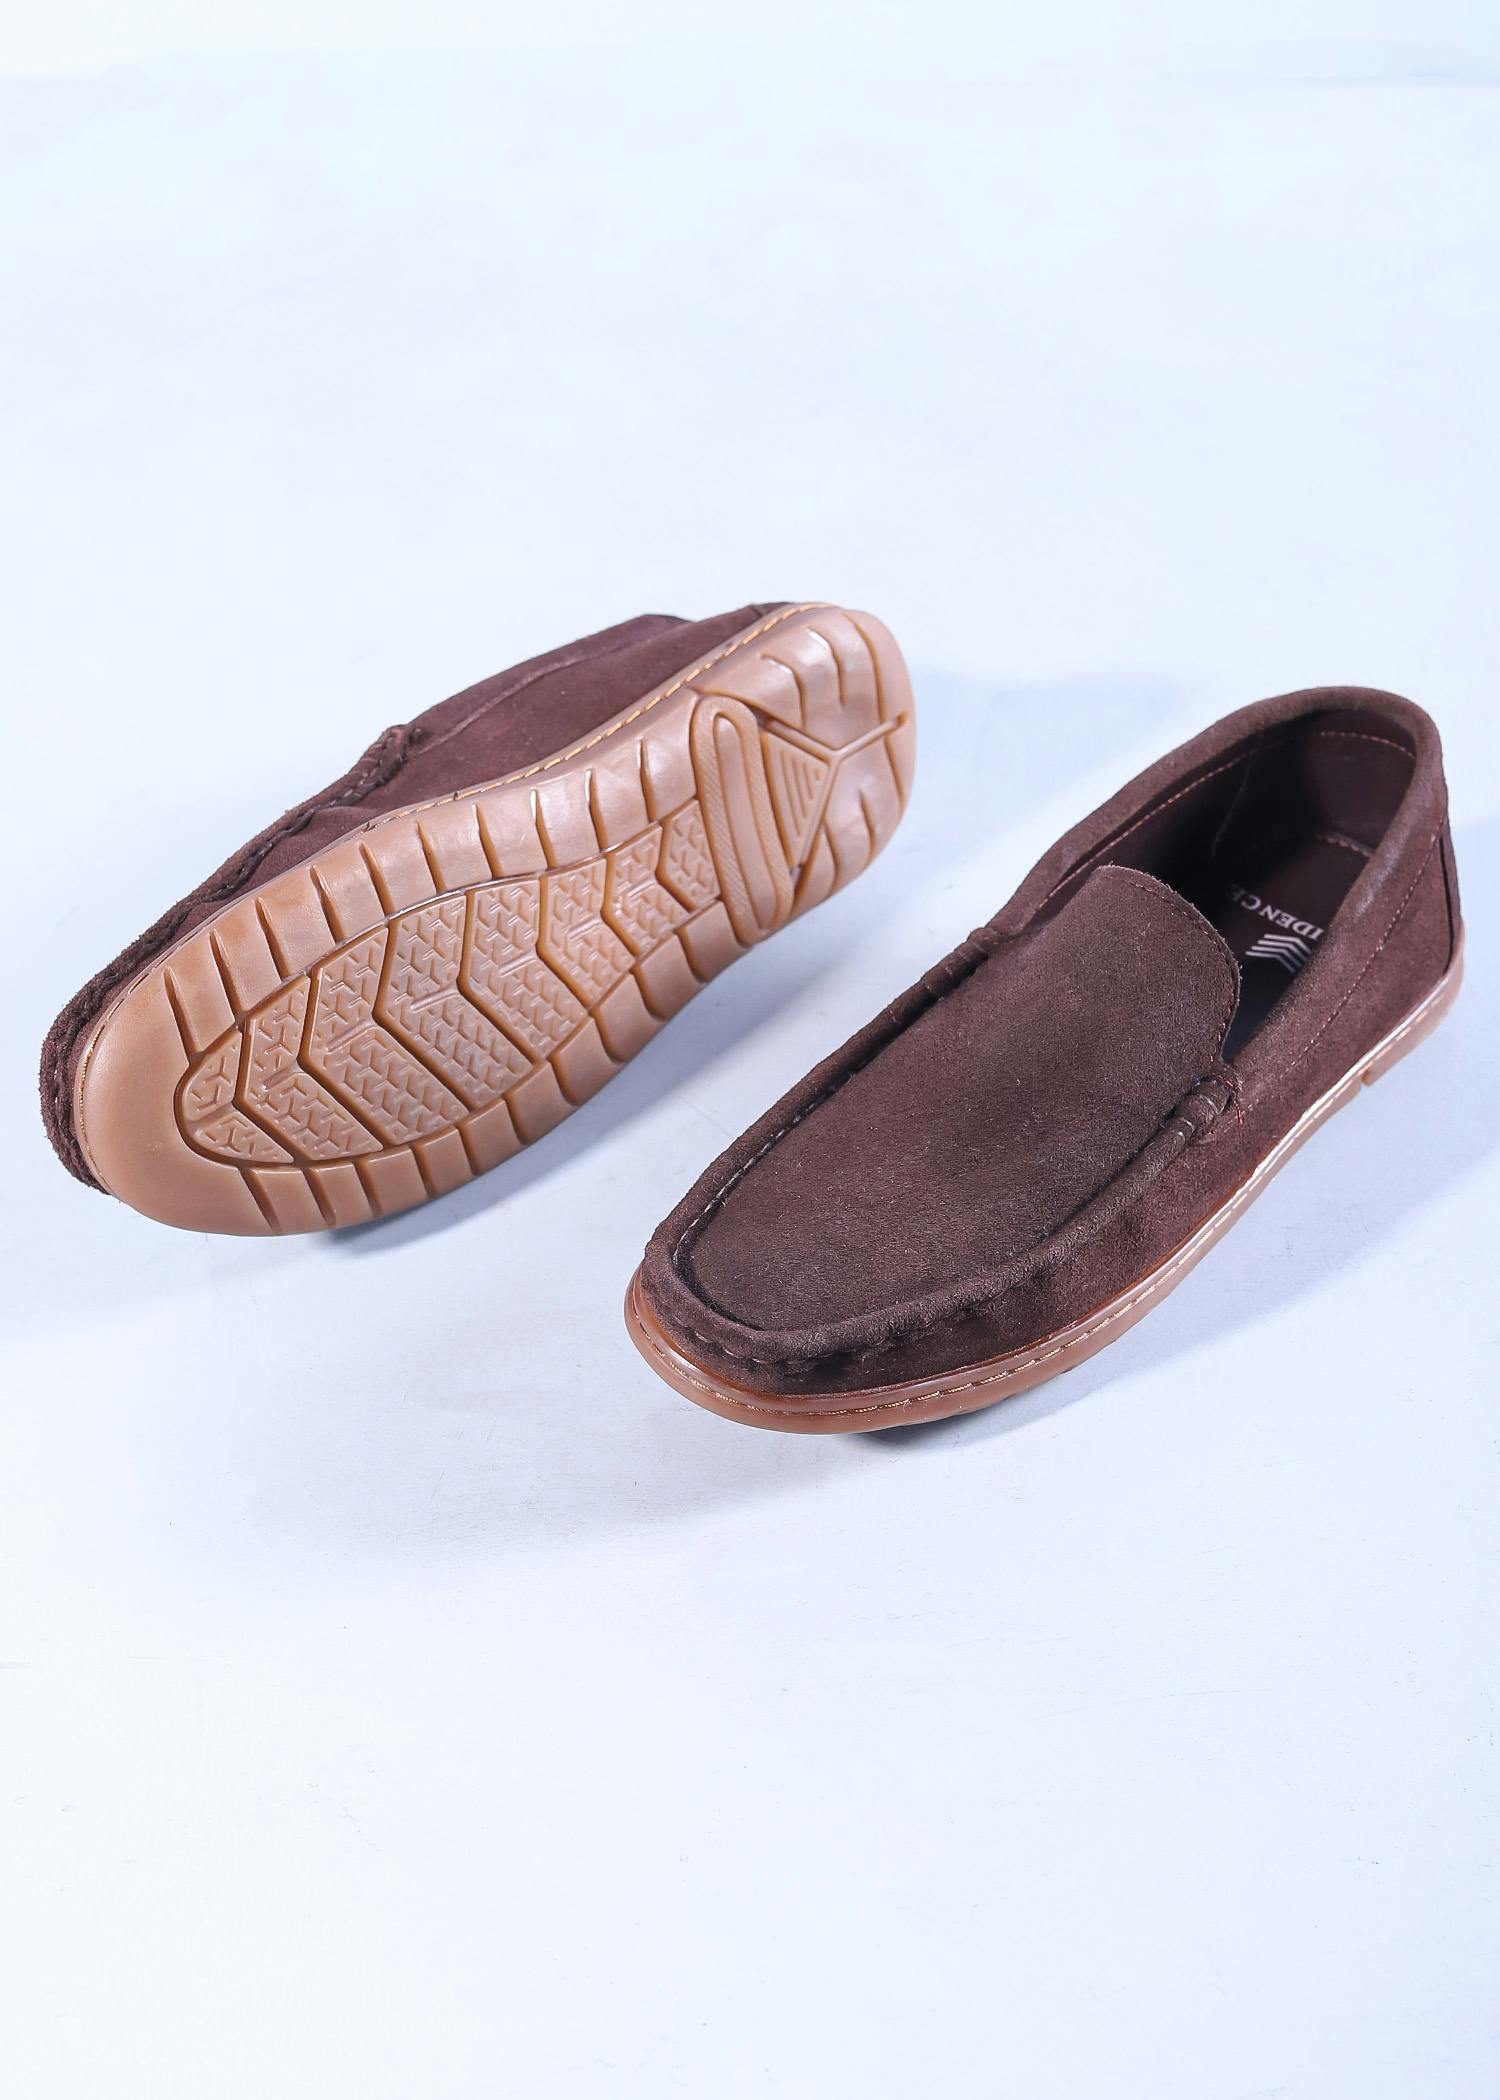 gorila mens shoes brown color sole